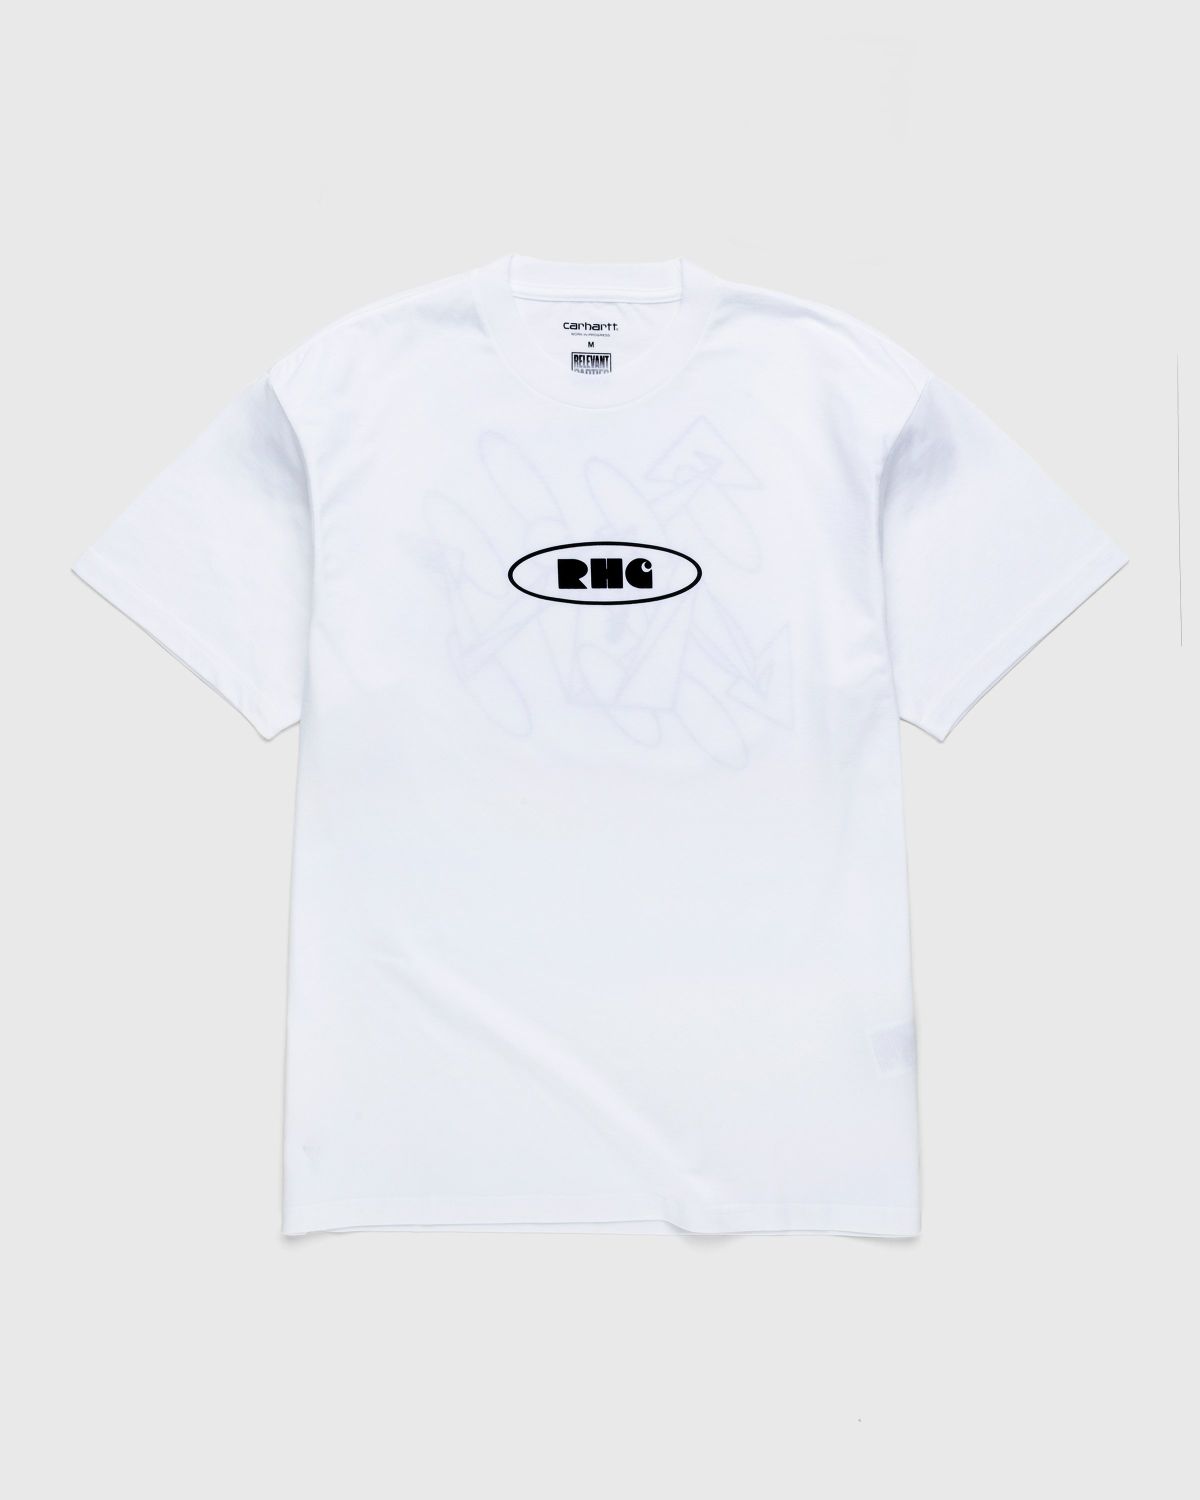 Carhartt WIP – Rush Hour T-Shirt White/Black - T-Shirts - White - Image 1